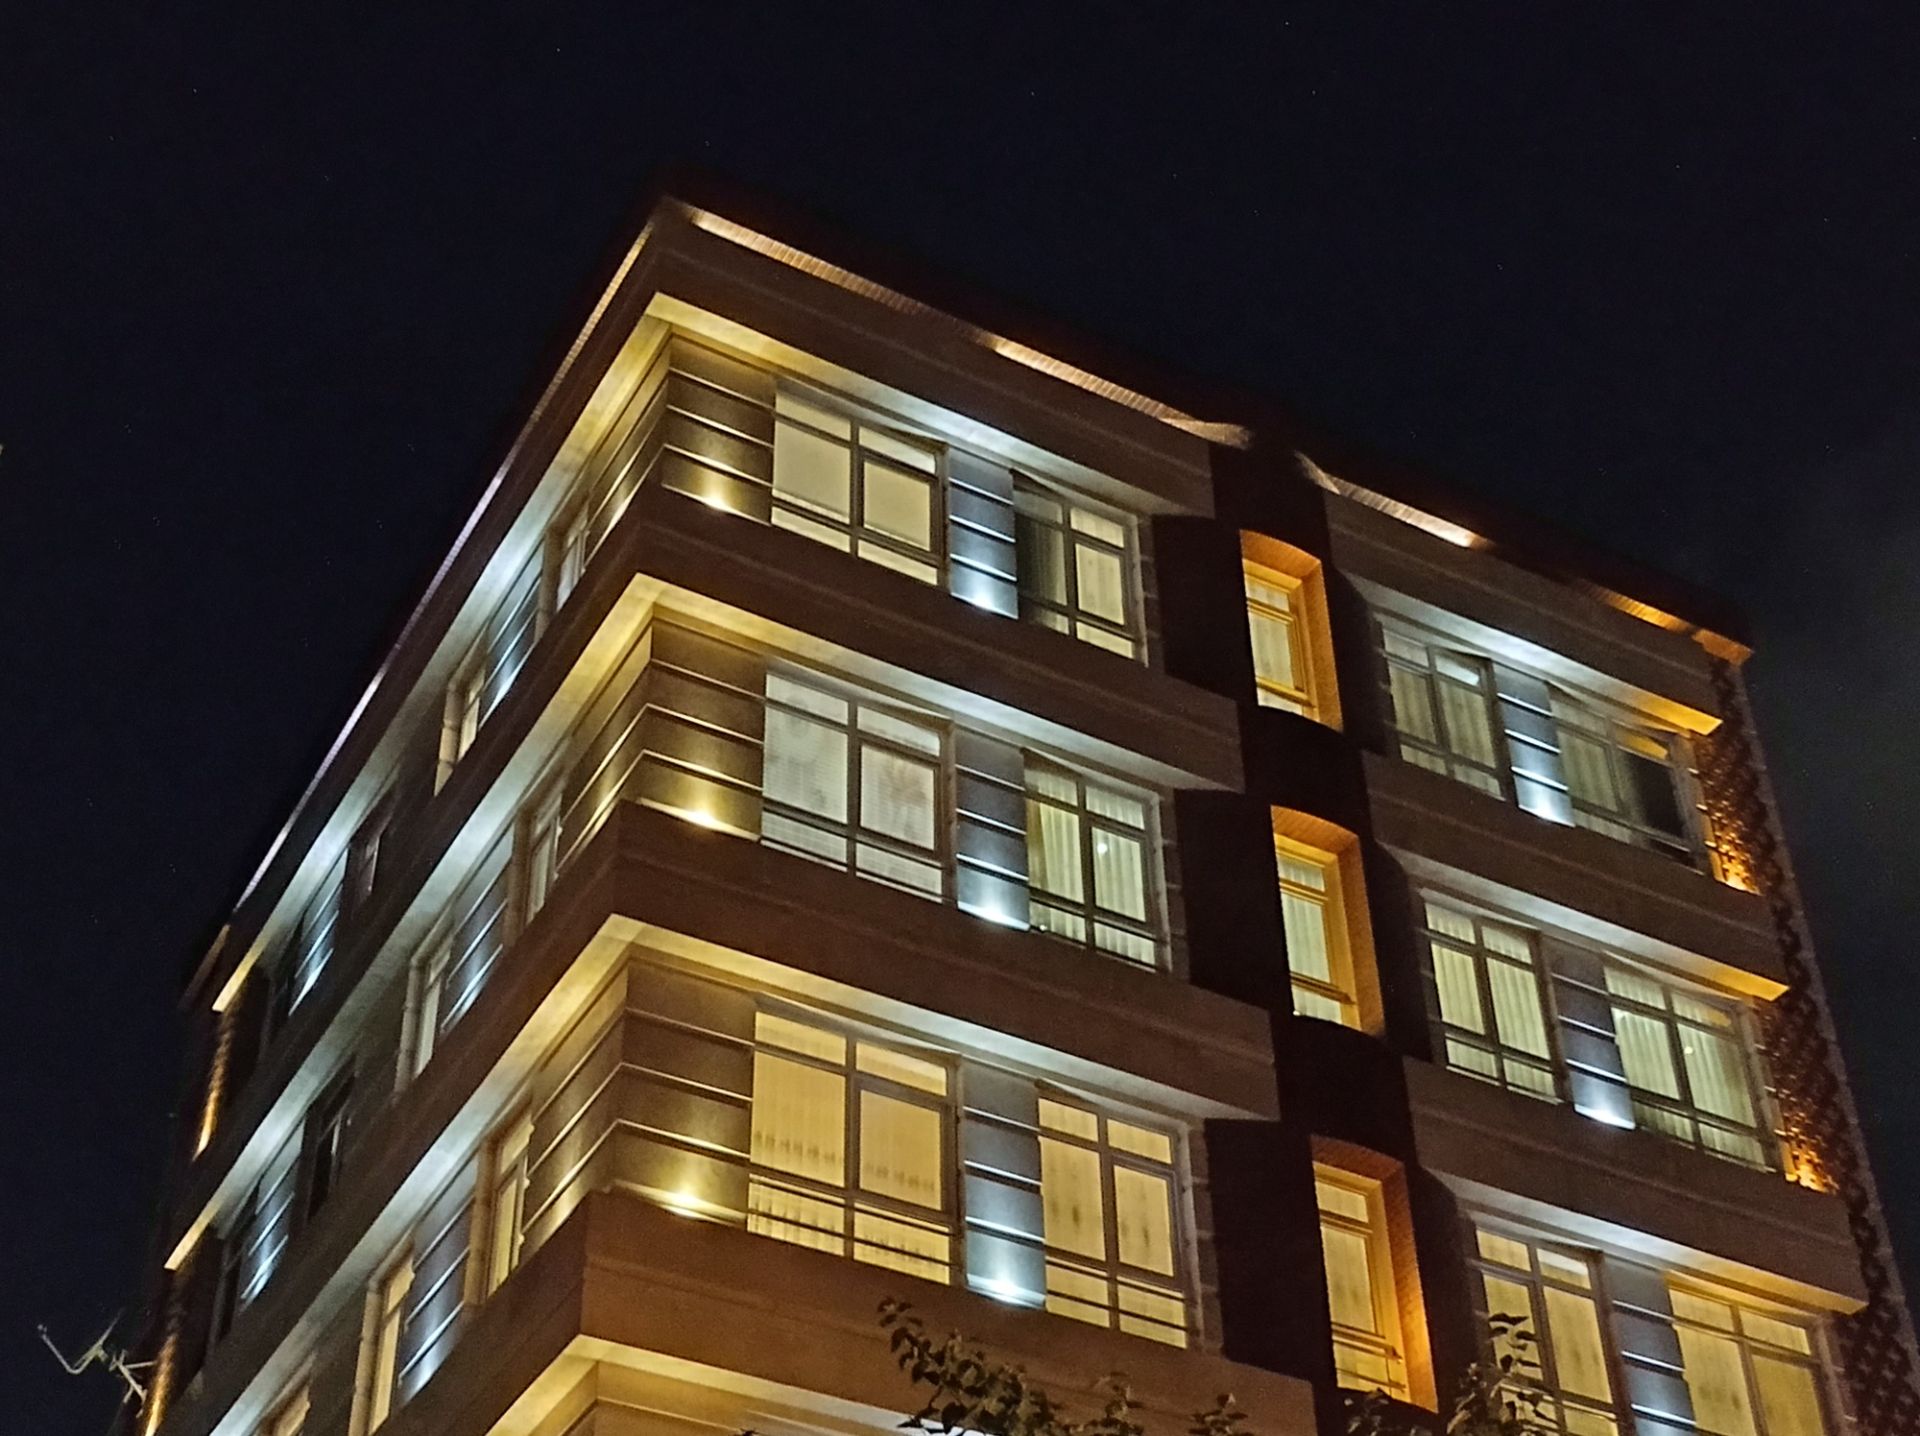 نمونه عکس 2x دوربین اصلی ردمی نوت ۹ در تاریکی - ساختمان مسکونی نارمک